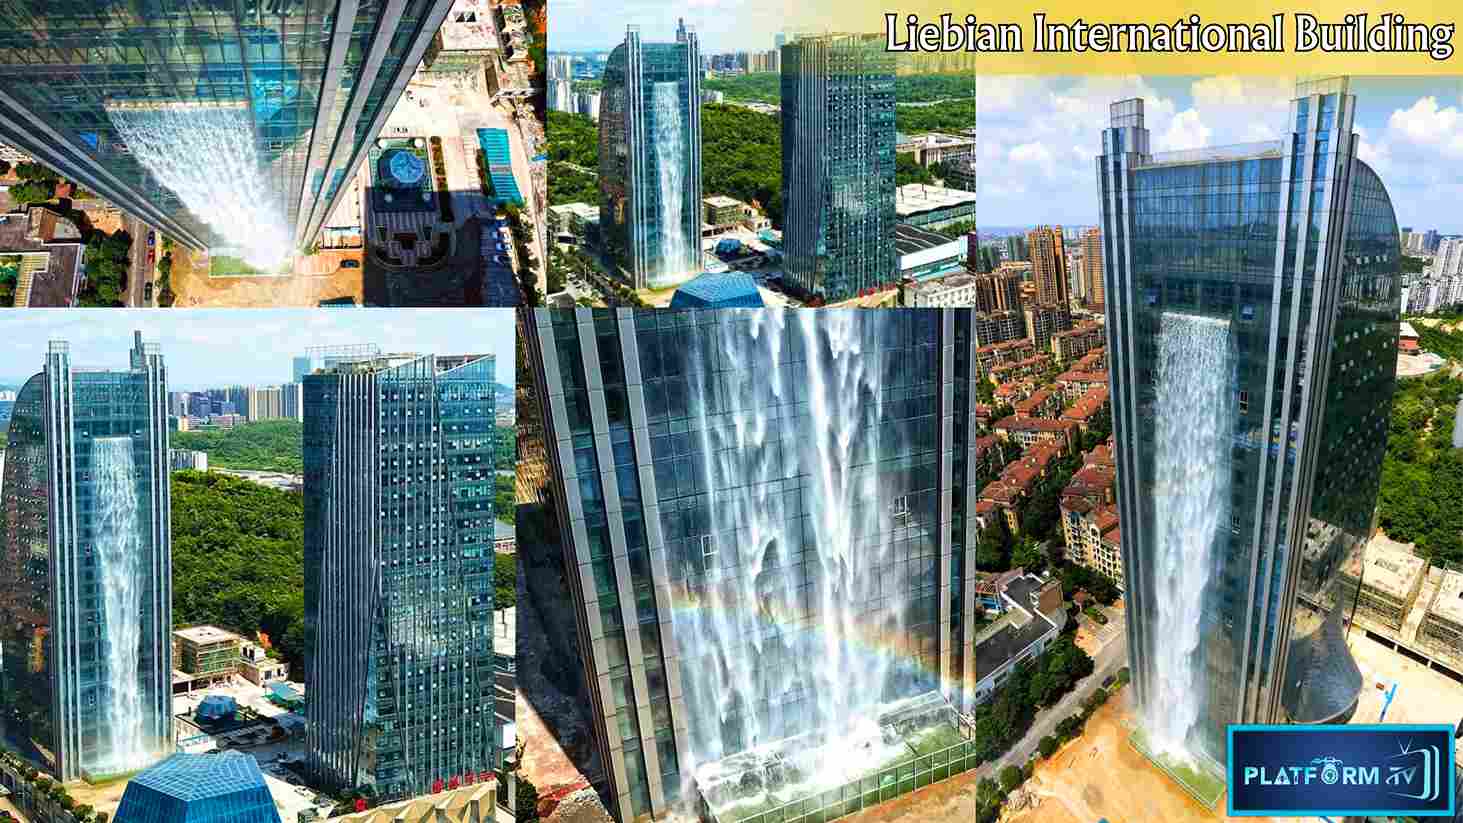 Liebian International Building - Platform Tamil